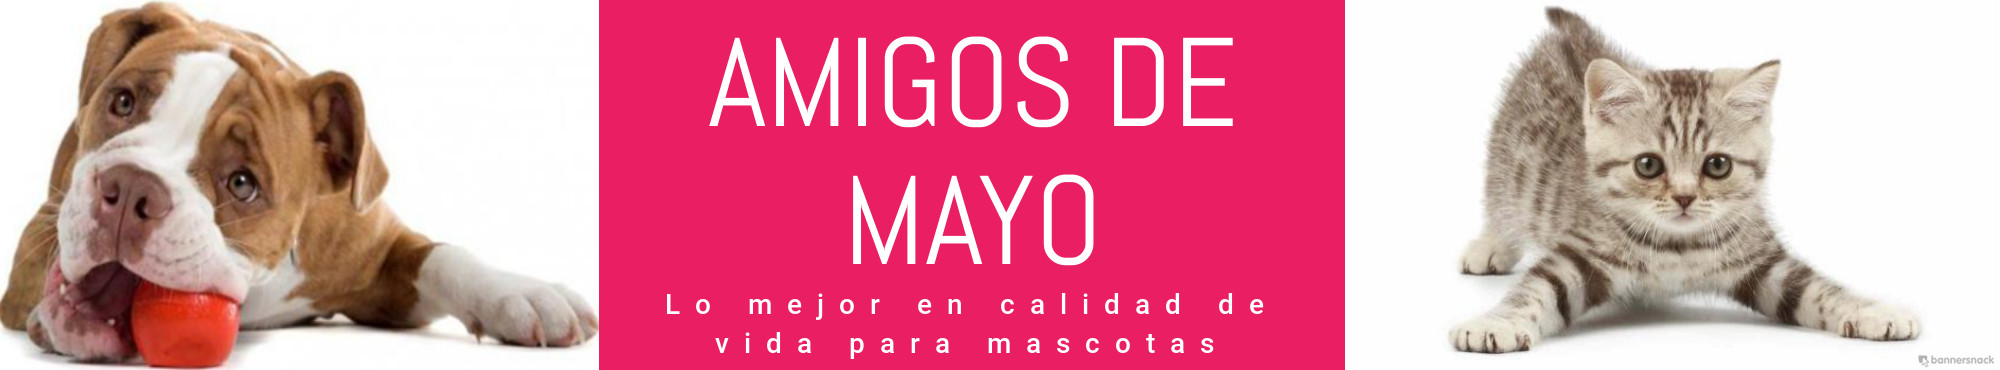 Micrositio de Amigos de Mayo